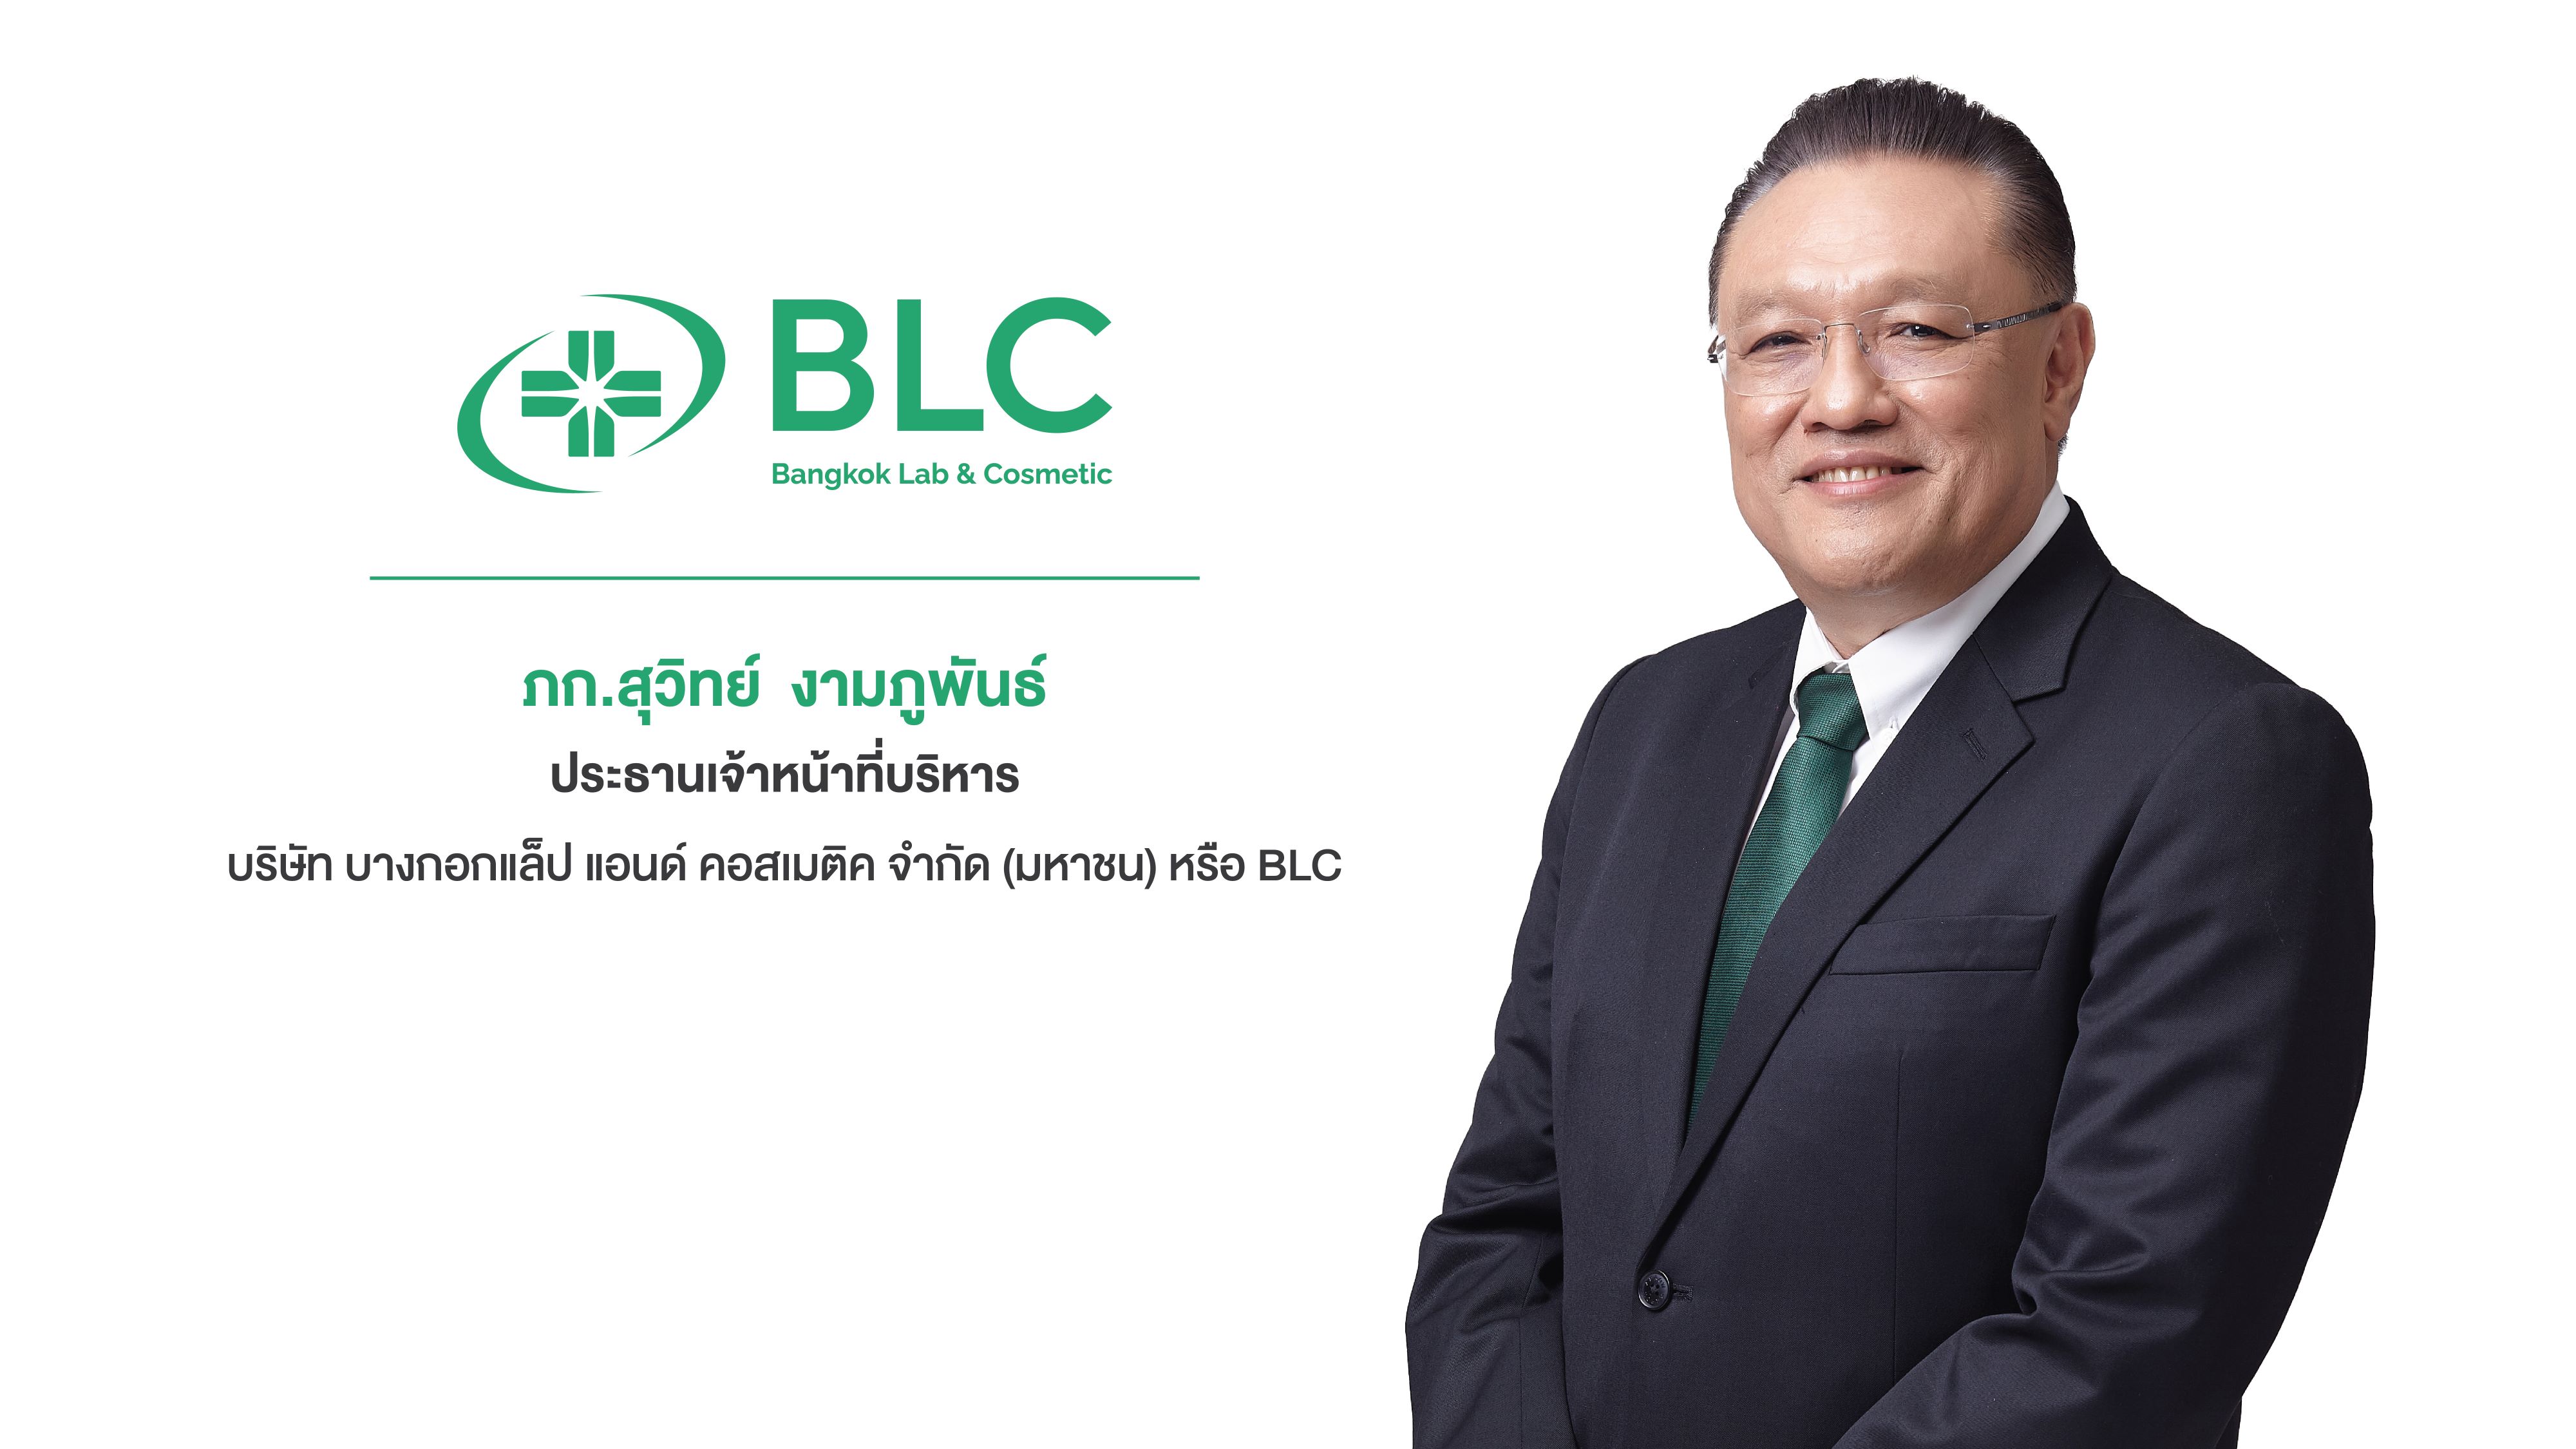 BLC โชว์ศักยภาพผลิตภัณฑ์ยาแผนปัจจุบัน - นวัตกรรมสมุนไพรไทย